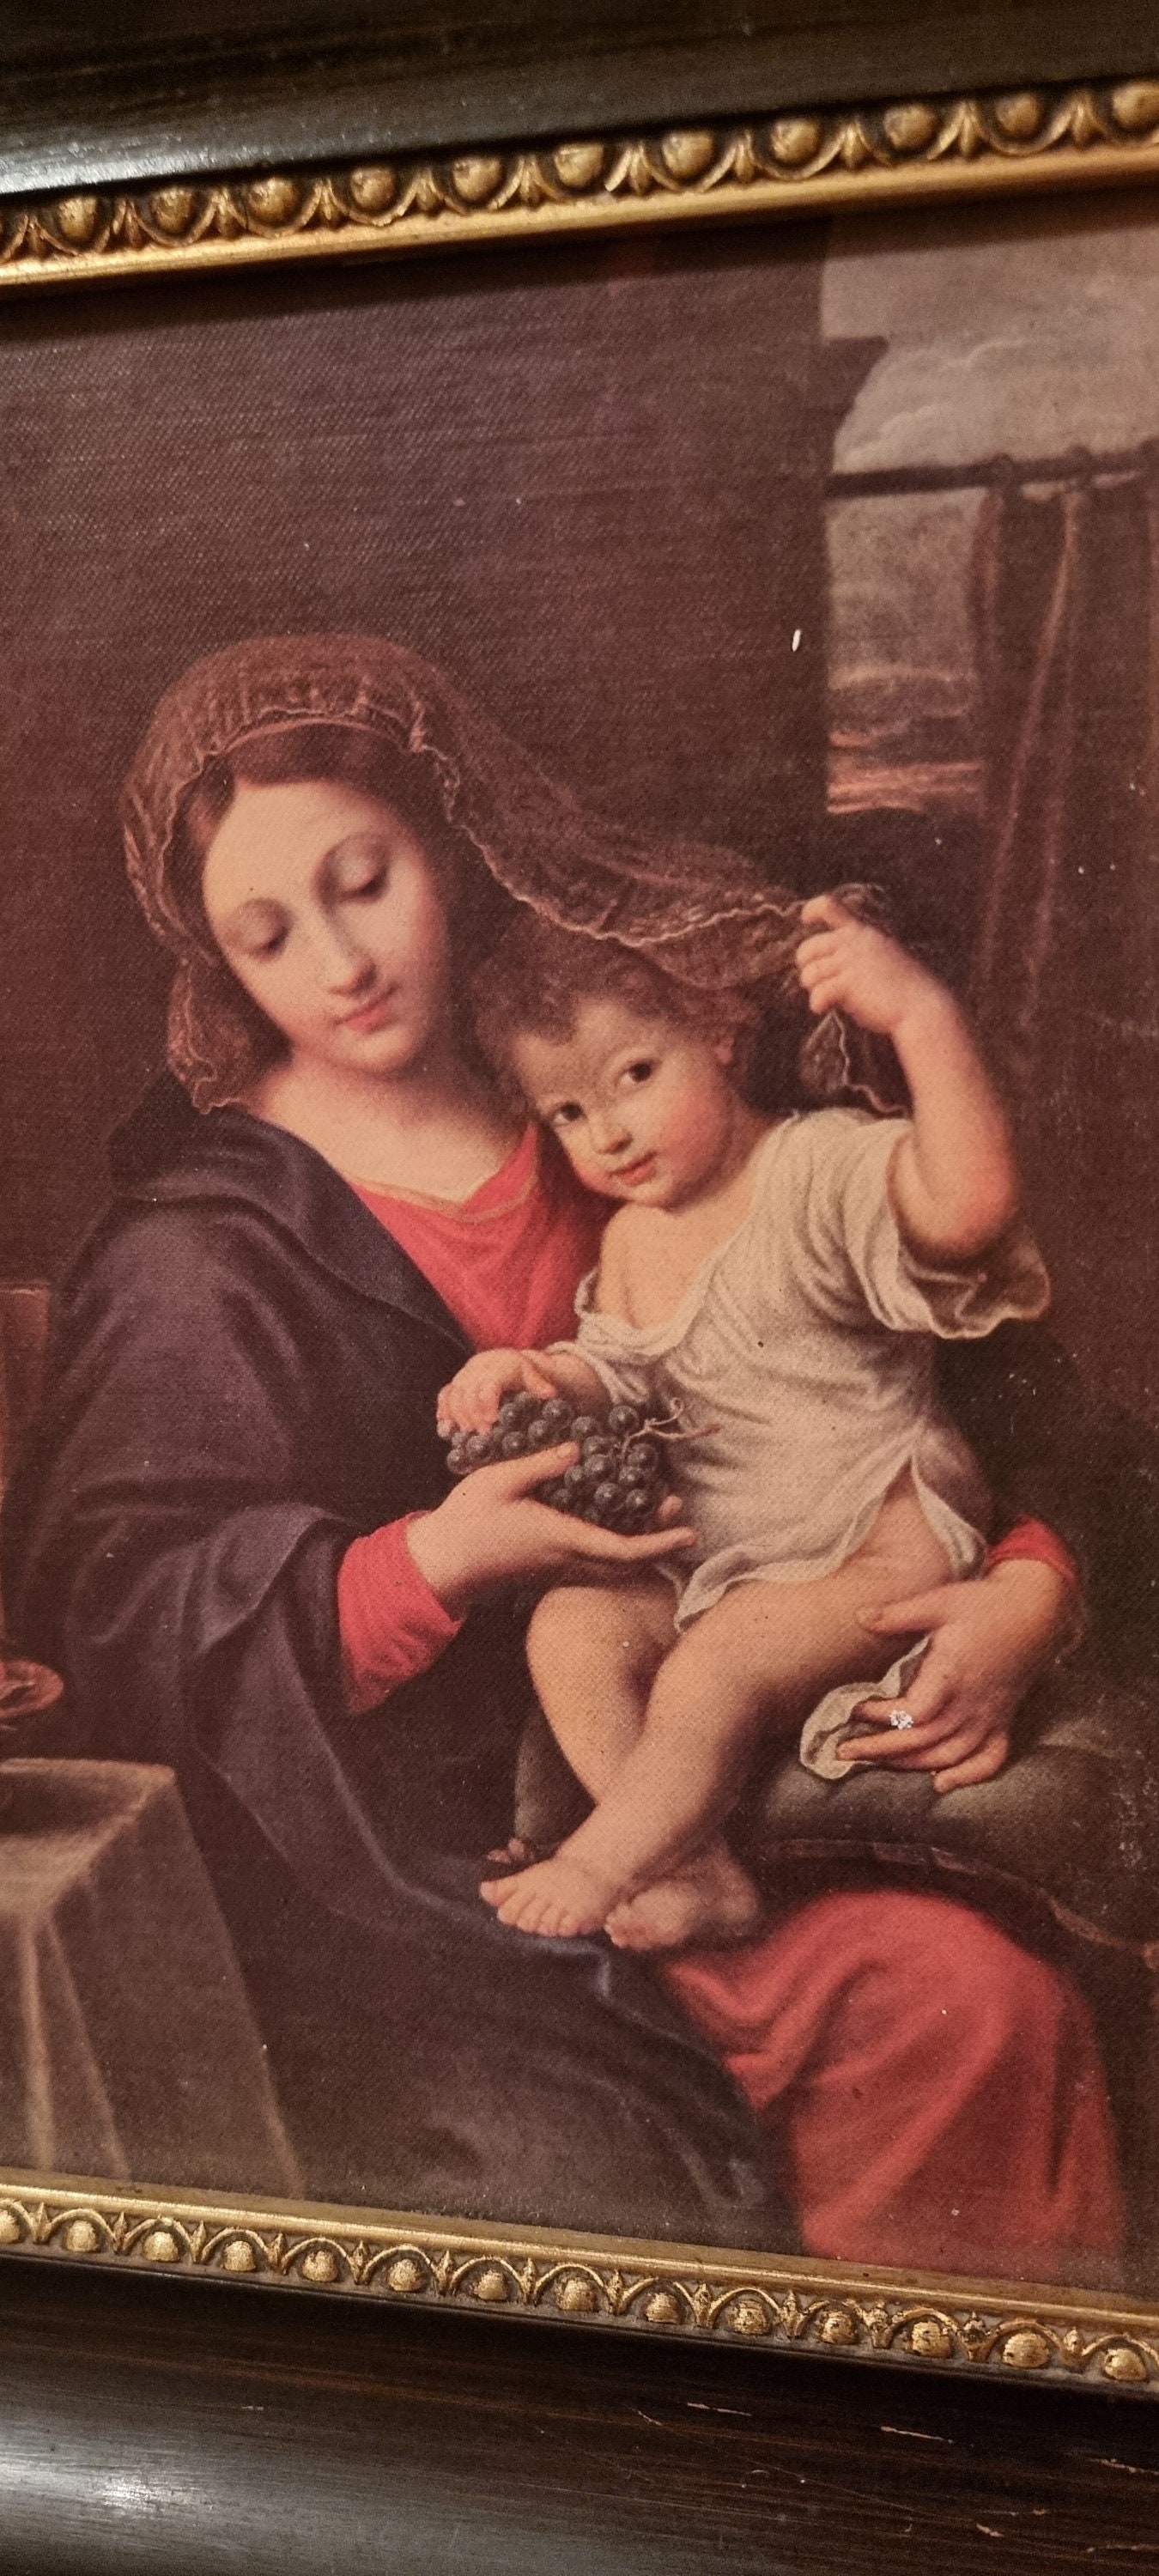 La Vierge a la grappe Peinture de Pierre Mignard (1612-1695) 1640